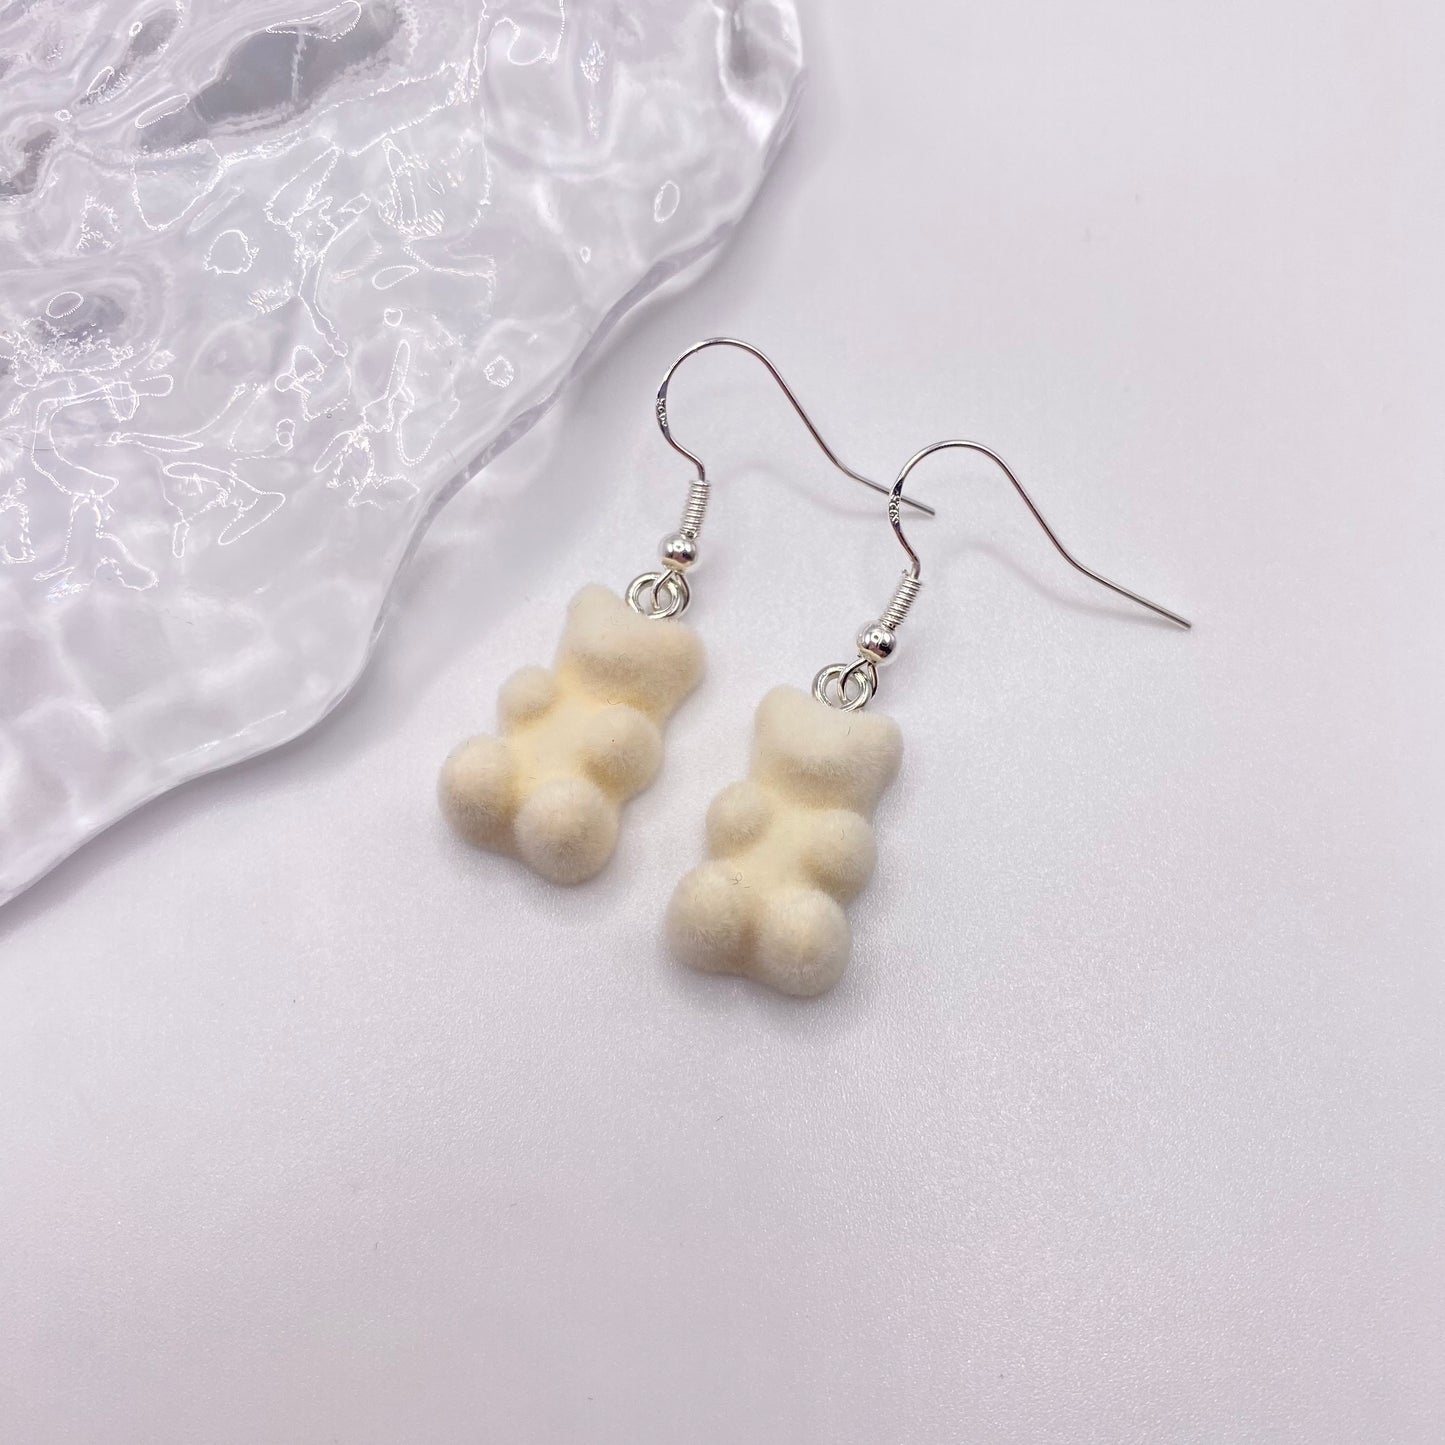 Fuzzy White Gummy Bear Earrings